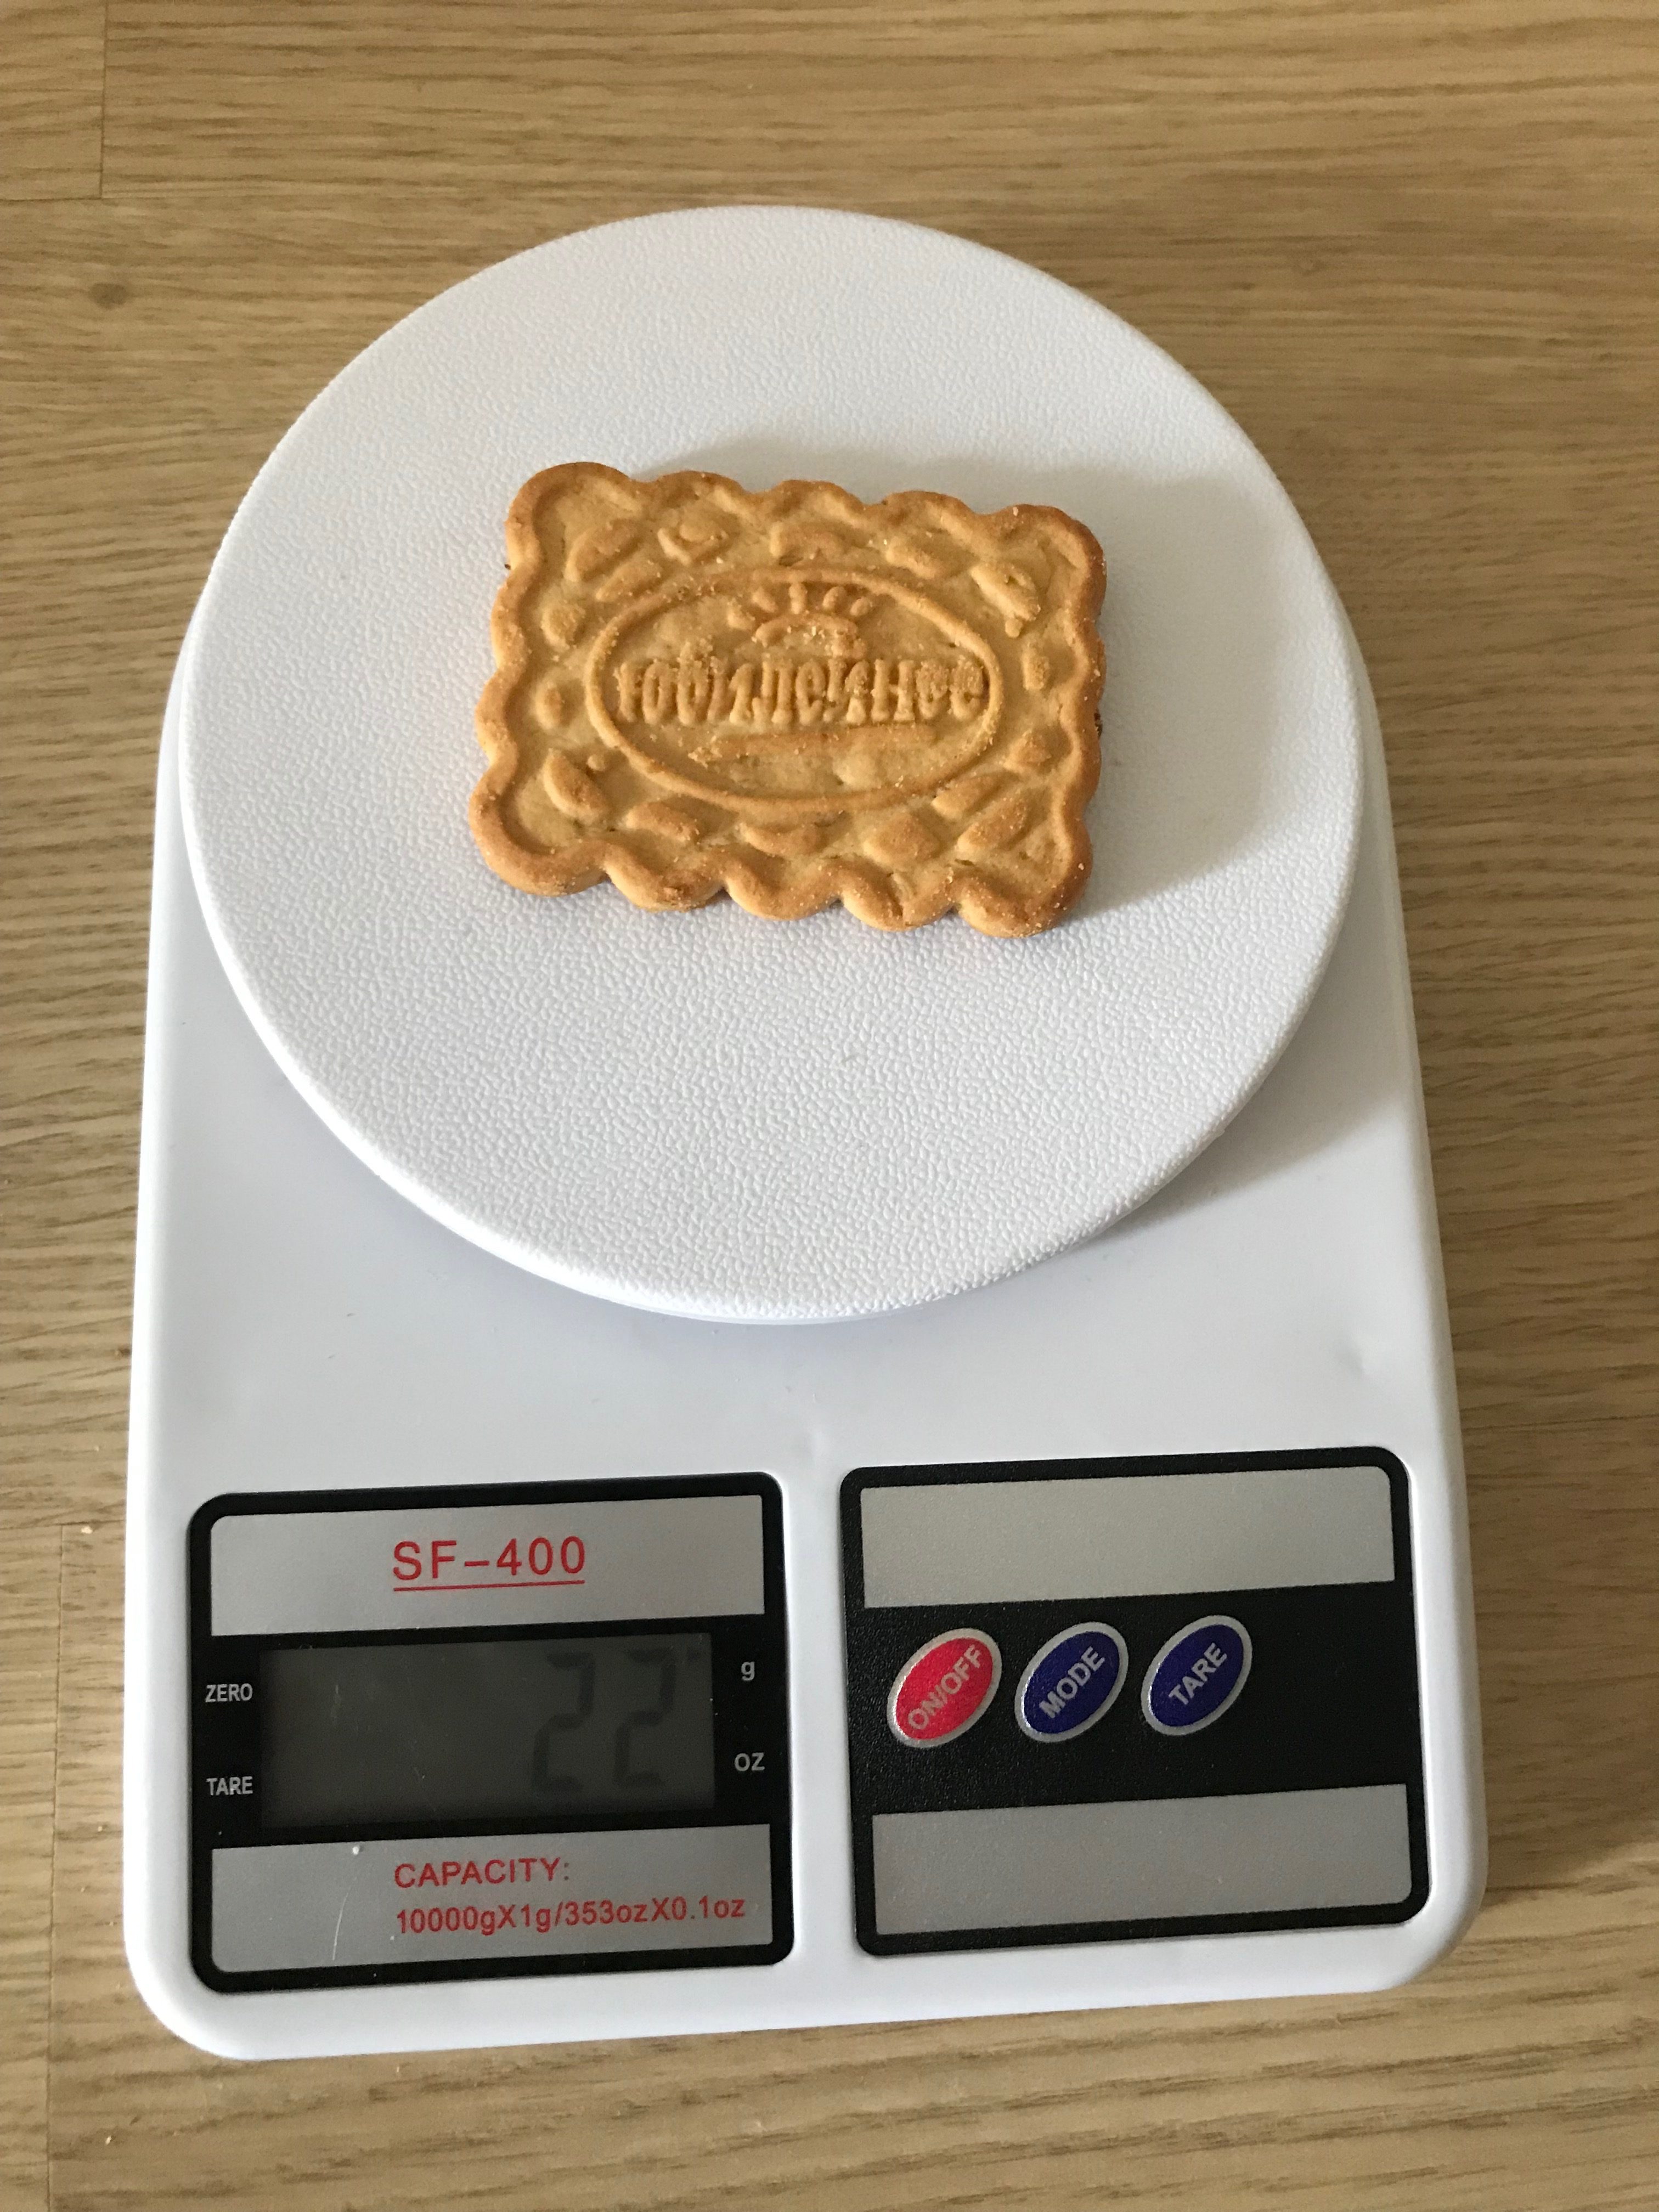 вес 1 печенья